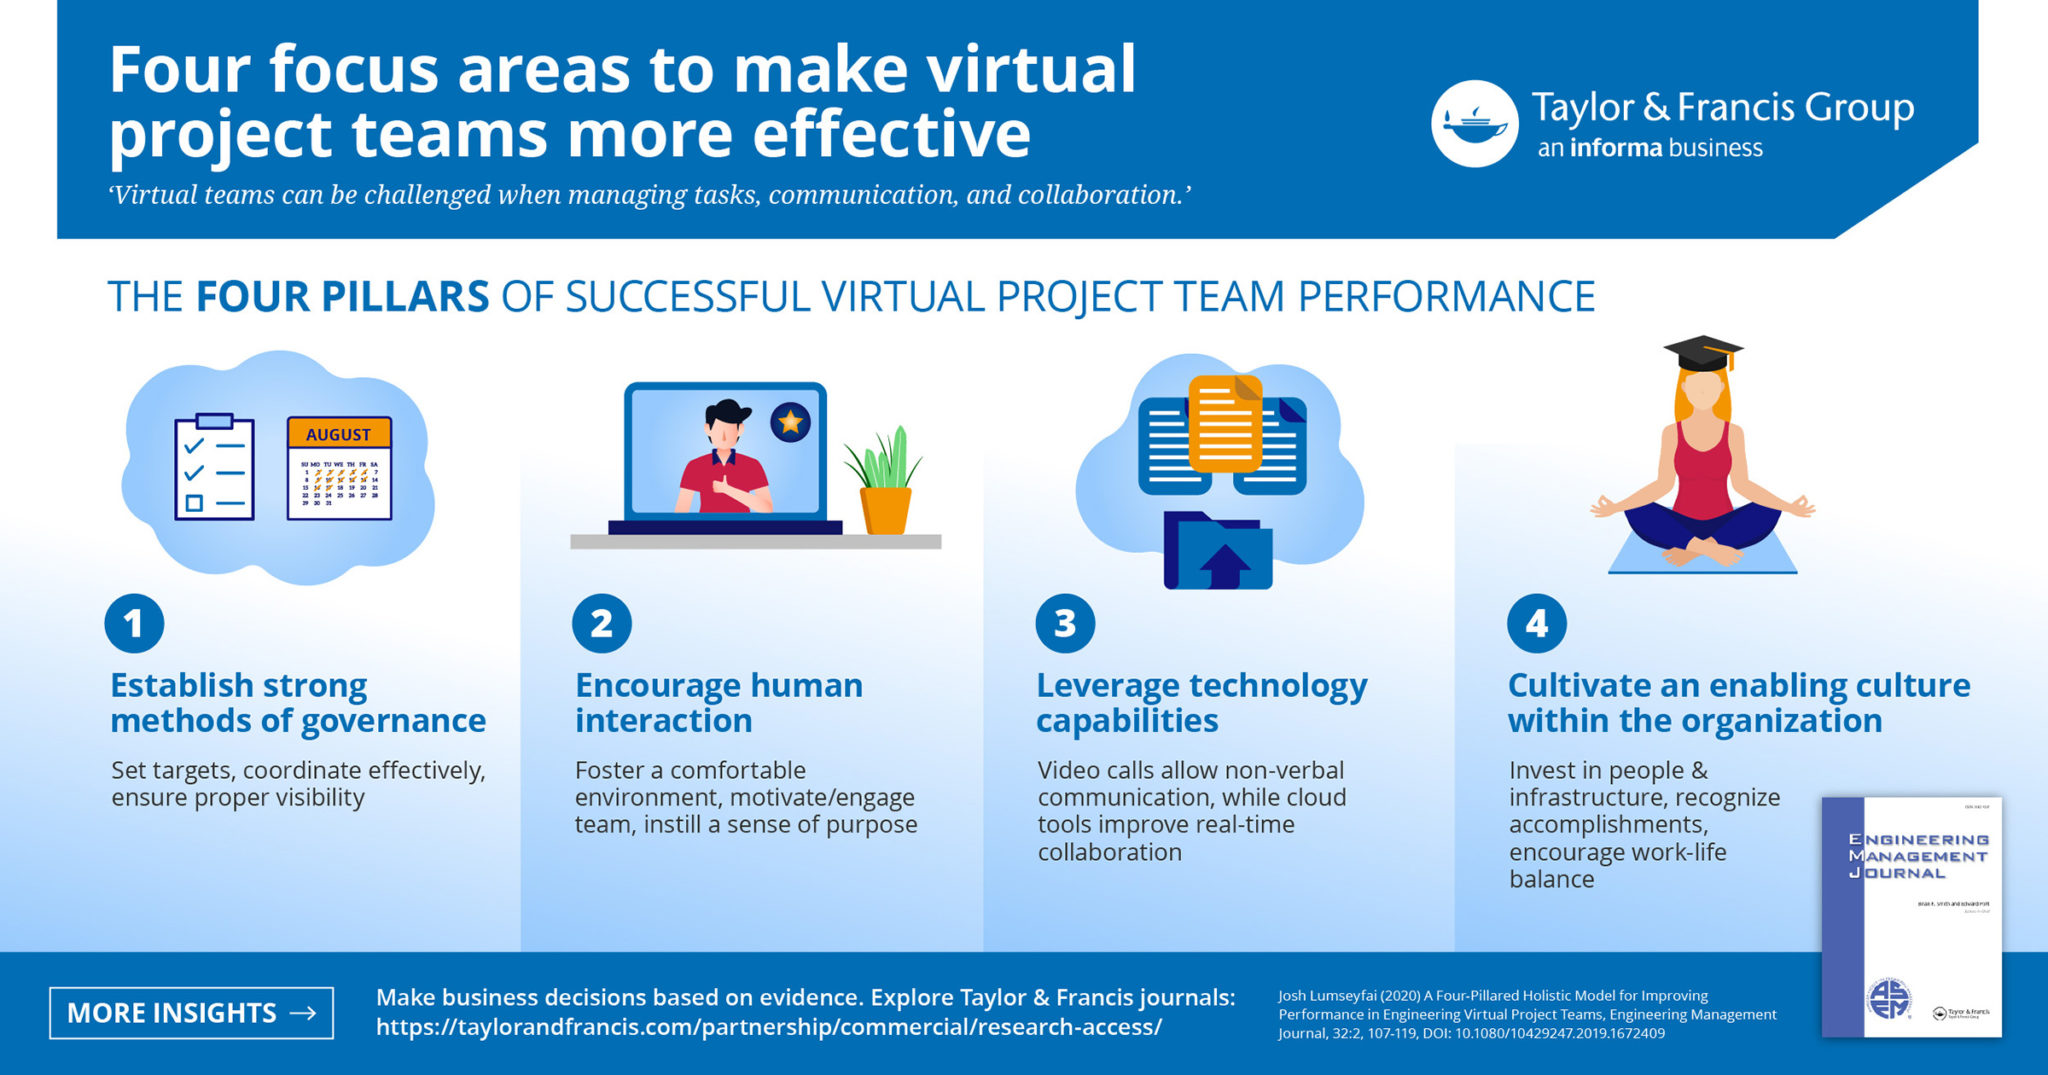 Lead effective virtual teams